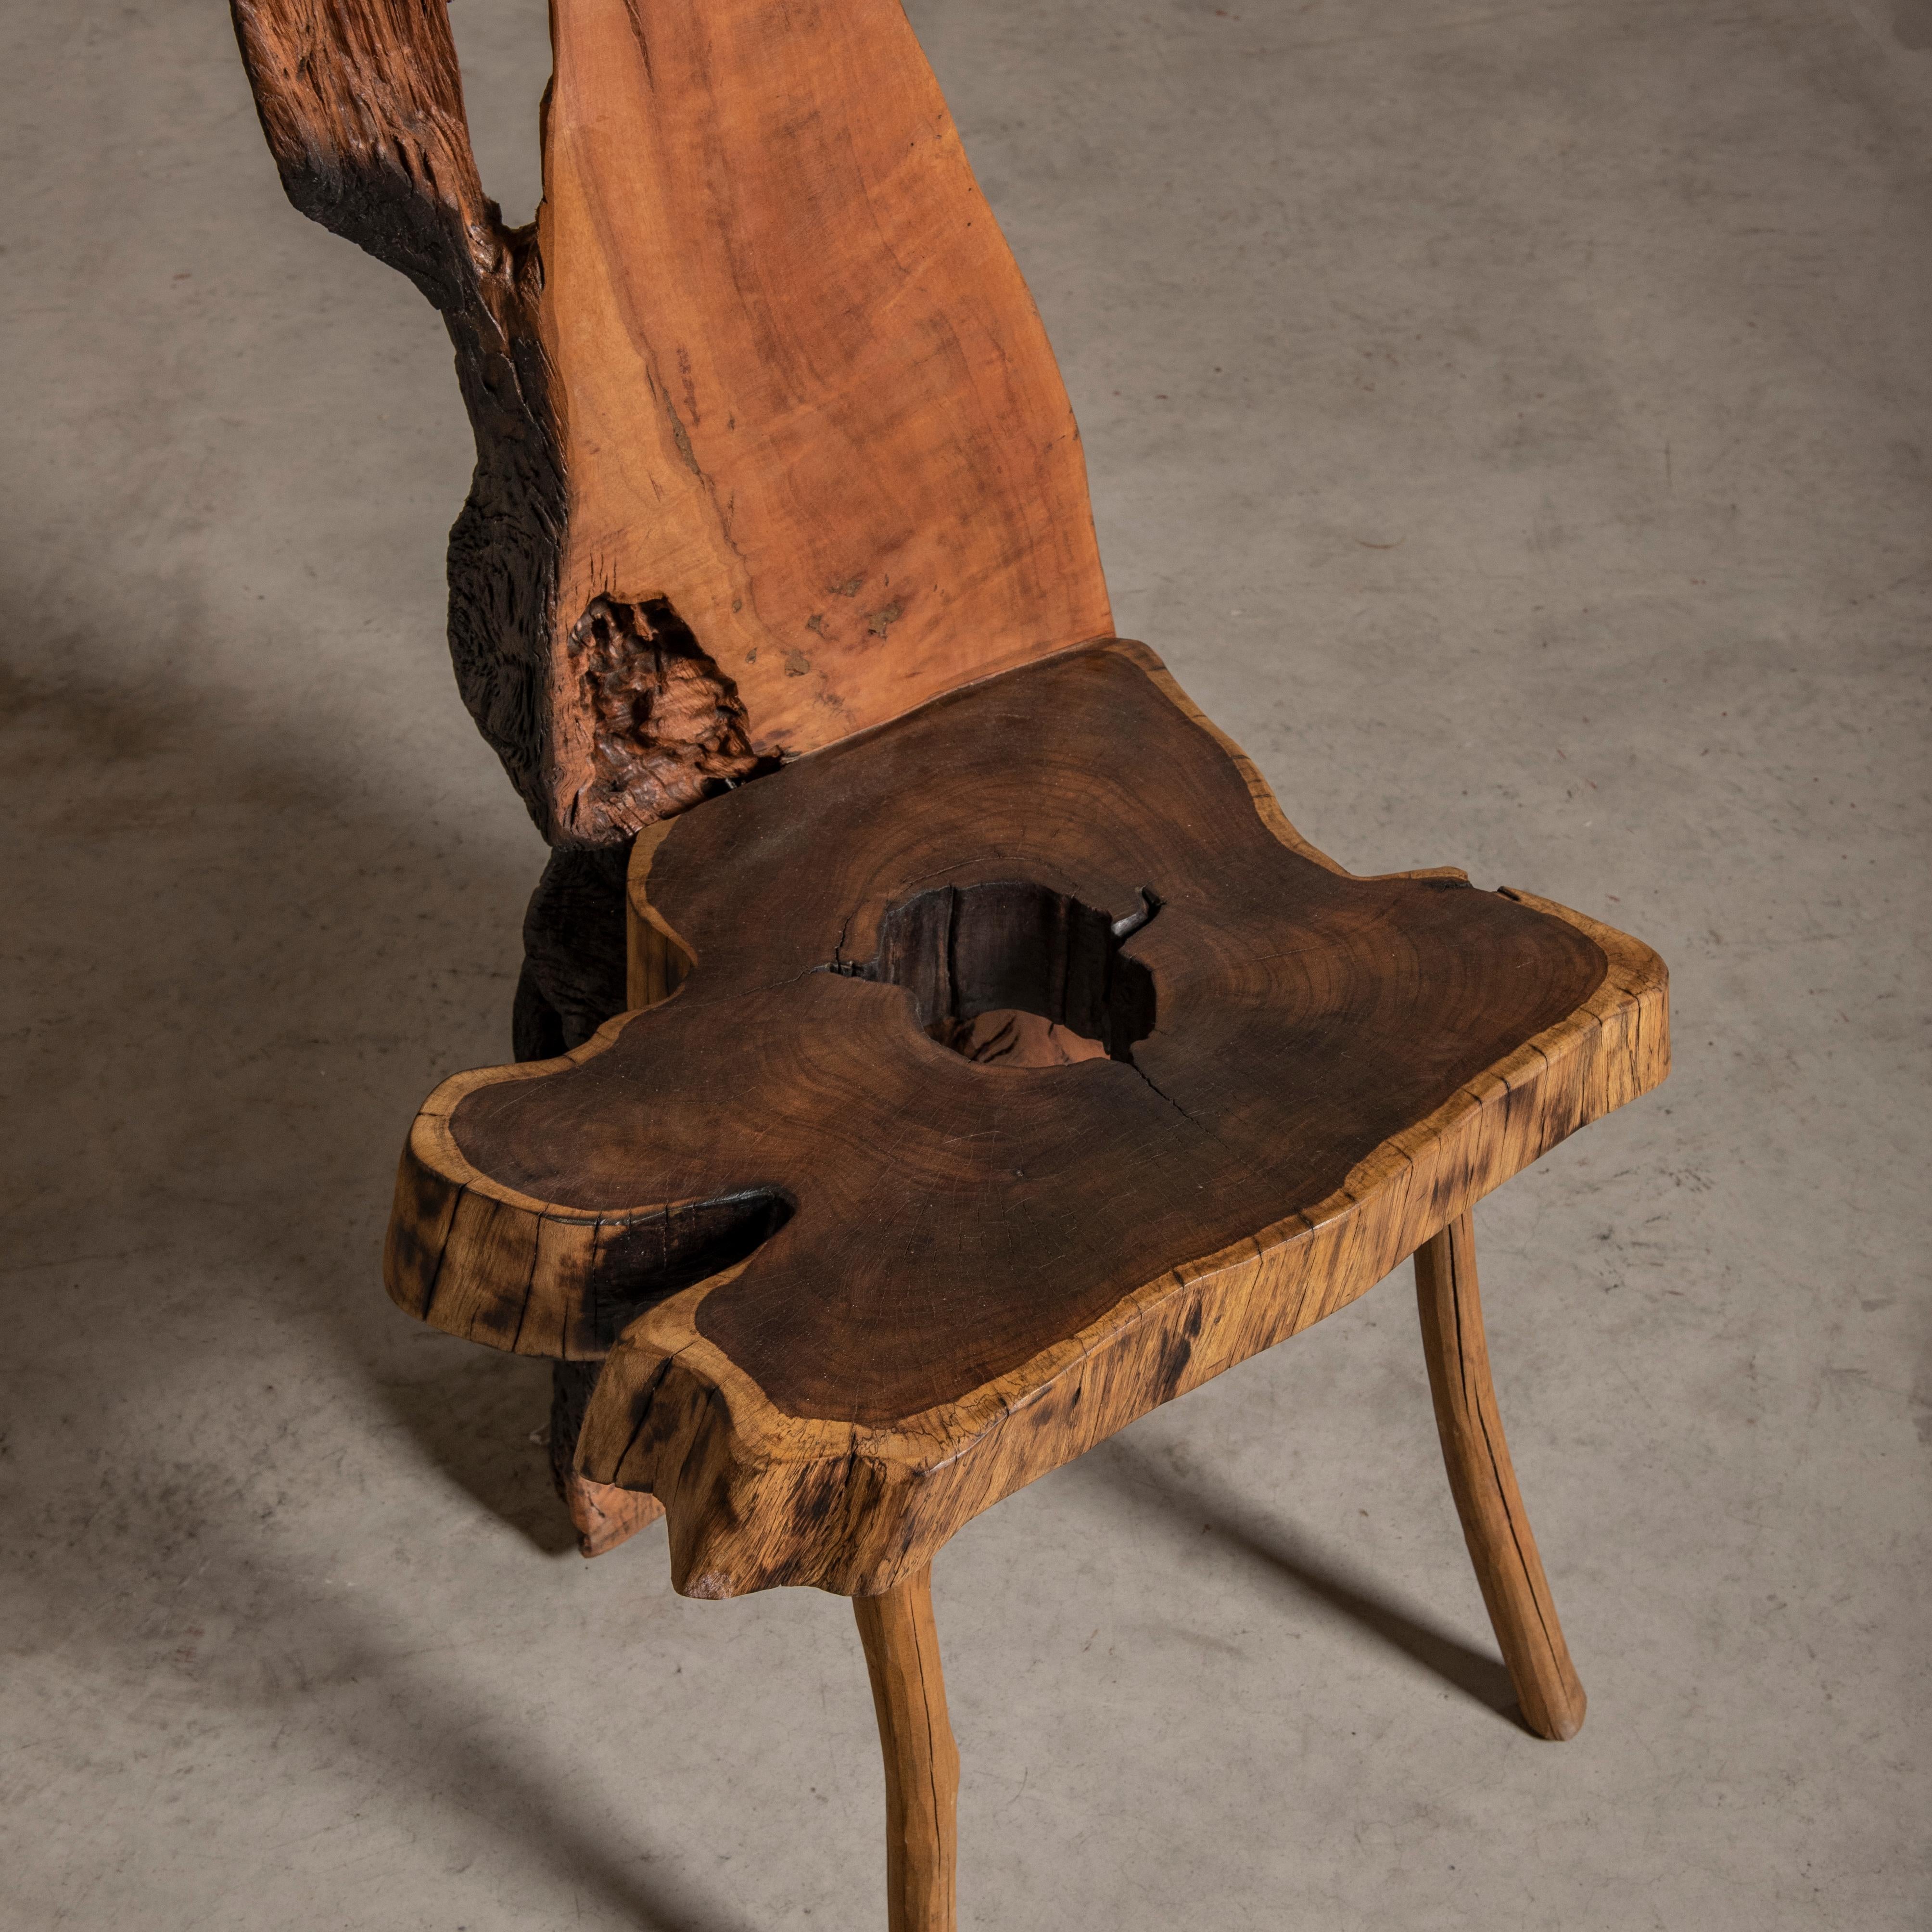 Plongez dans le monde énigmatique de l'art du meuble avec cette chaise envoûtante, fabriquée par les mains expertes de Nen Artesão. Brouillant les frontières entre l'art du design et la fabrication de meubles vernaculaires, cette chaise est un